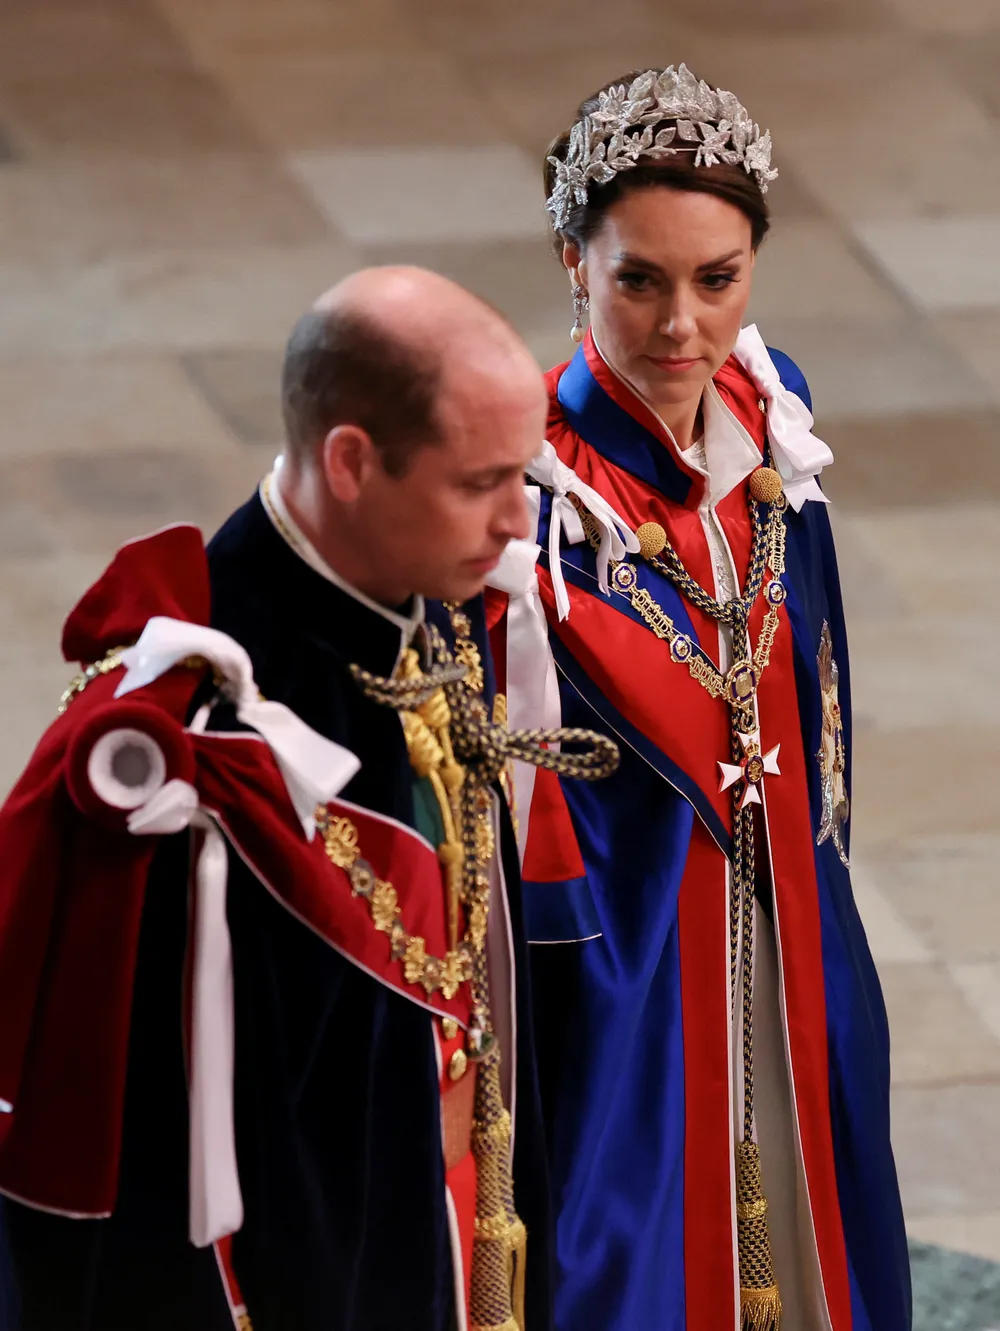 Príncipe William e a Princesa Kate Middleton na cerimônia de coroação do Rei Charles III na Abadia de Westminster